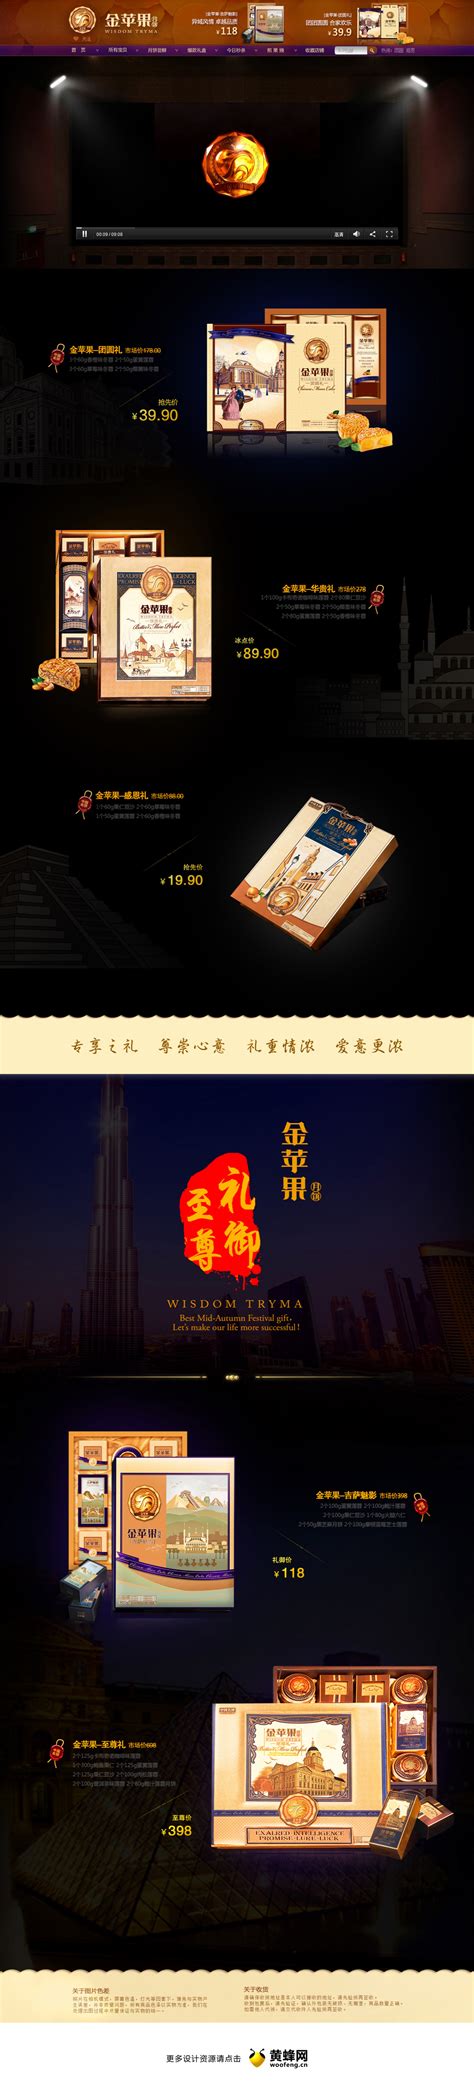 金苹果食品中秋节活动首页设计 - - 大美工dameigong.cn